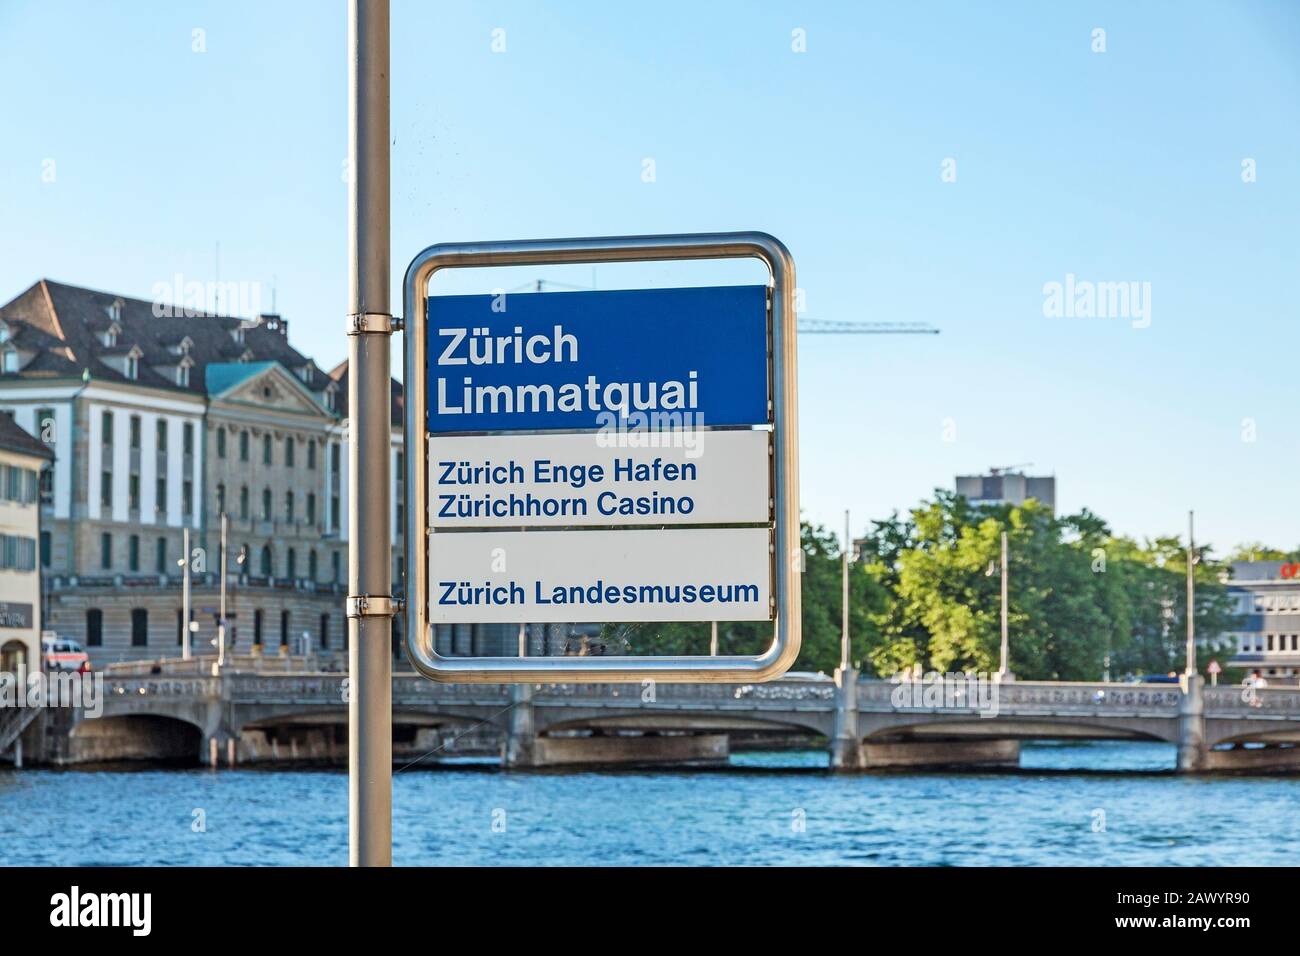 Zurigo, Svizzera - 10 giugno 2017: Segnale a Limmatquai vicino al fiume Limmat firmato con 'Zurich Limmatquai' - Zurigo Port Enge 'Zurich Enge Hafen' - Zur Foto Stock